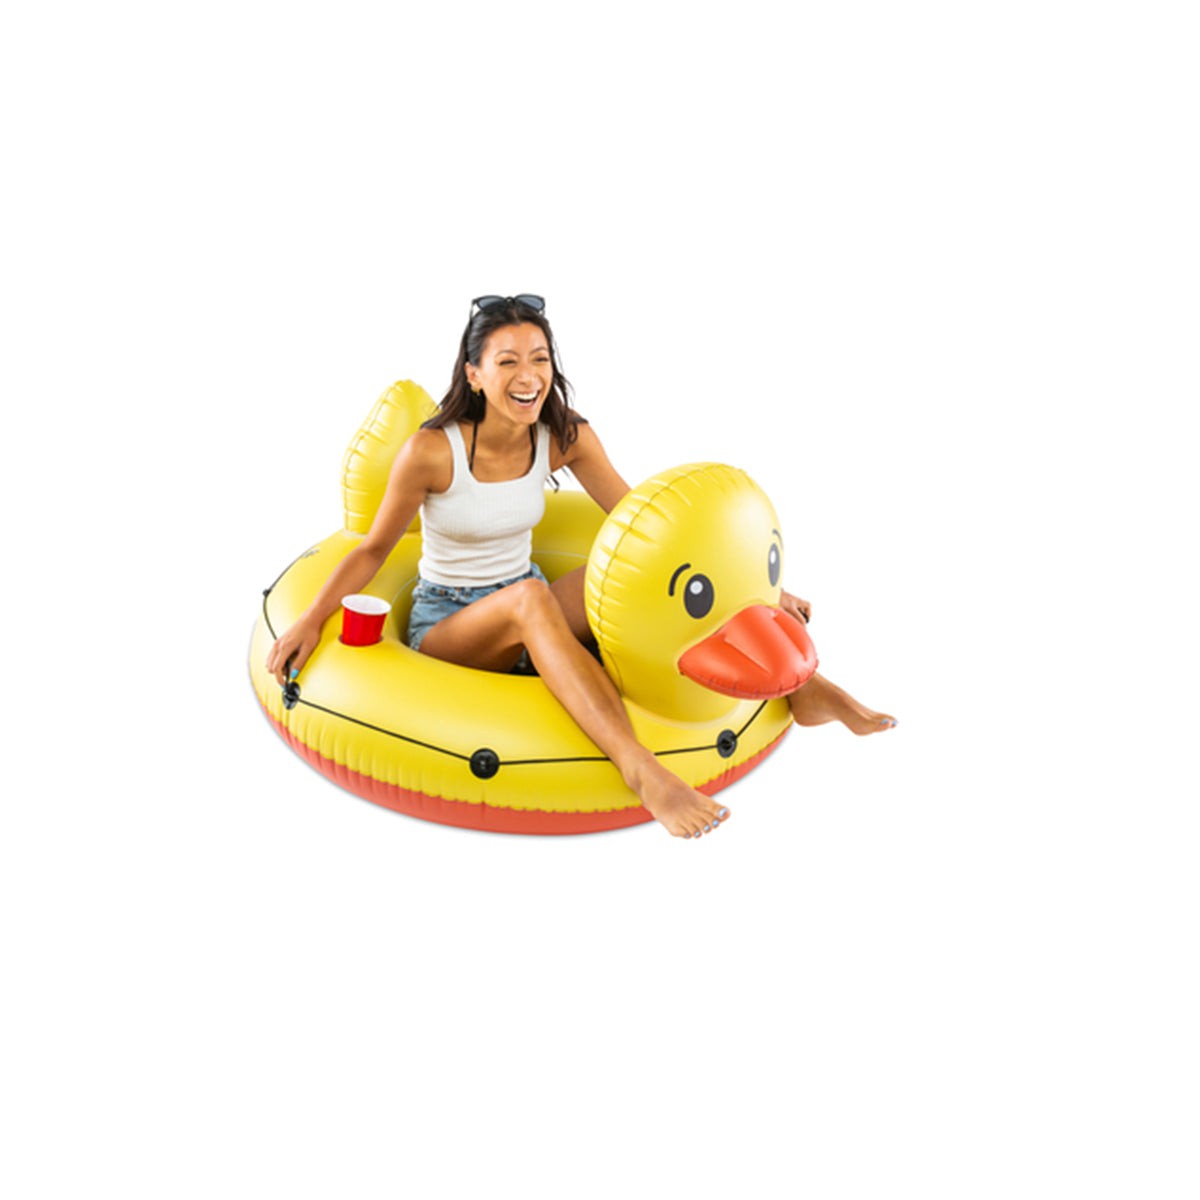 STORTZ TOYS Summer Giant Duck River Tube, Yellow 840092704345